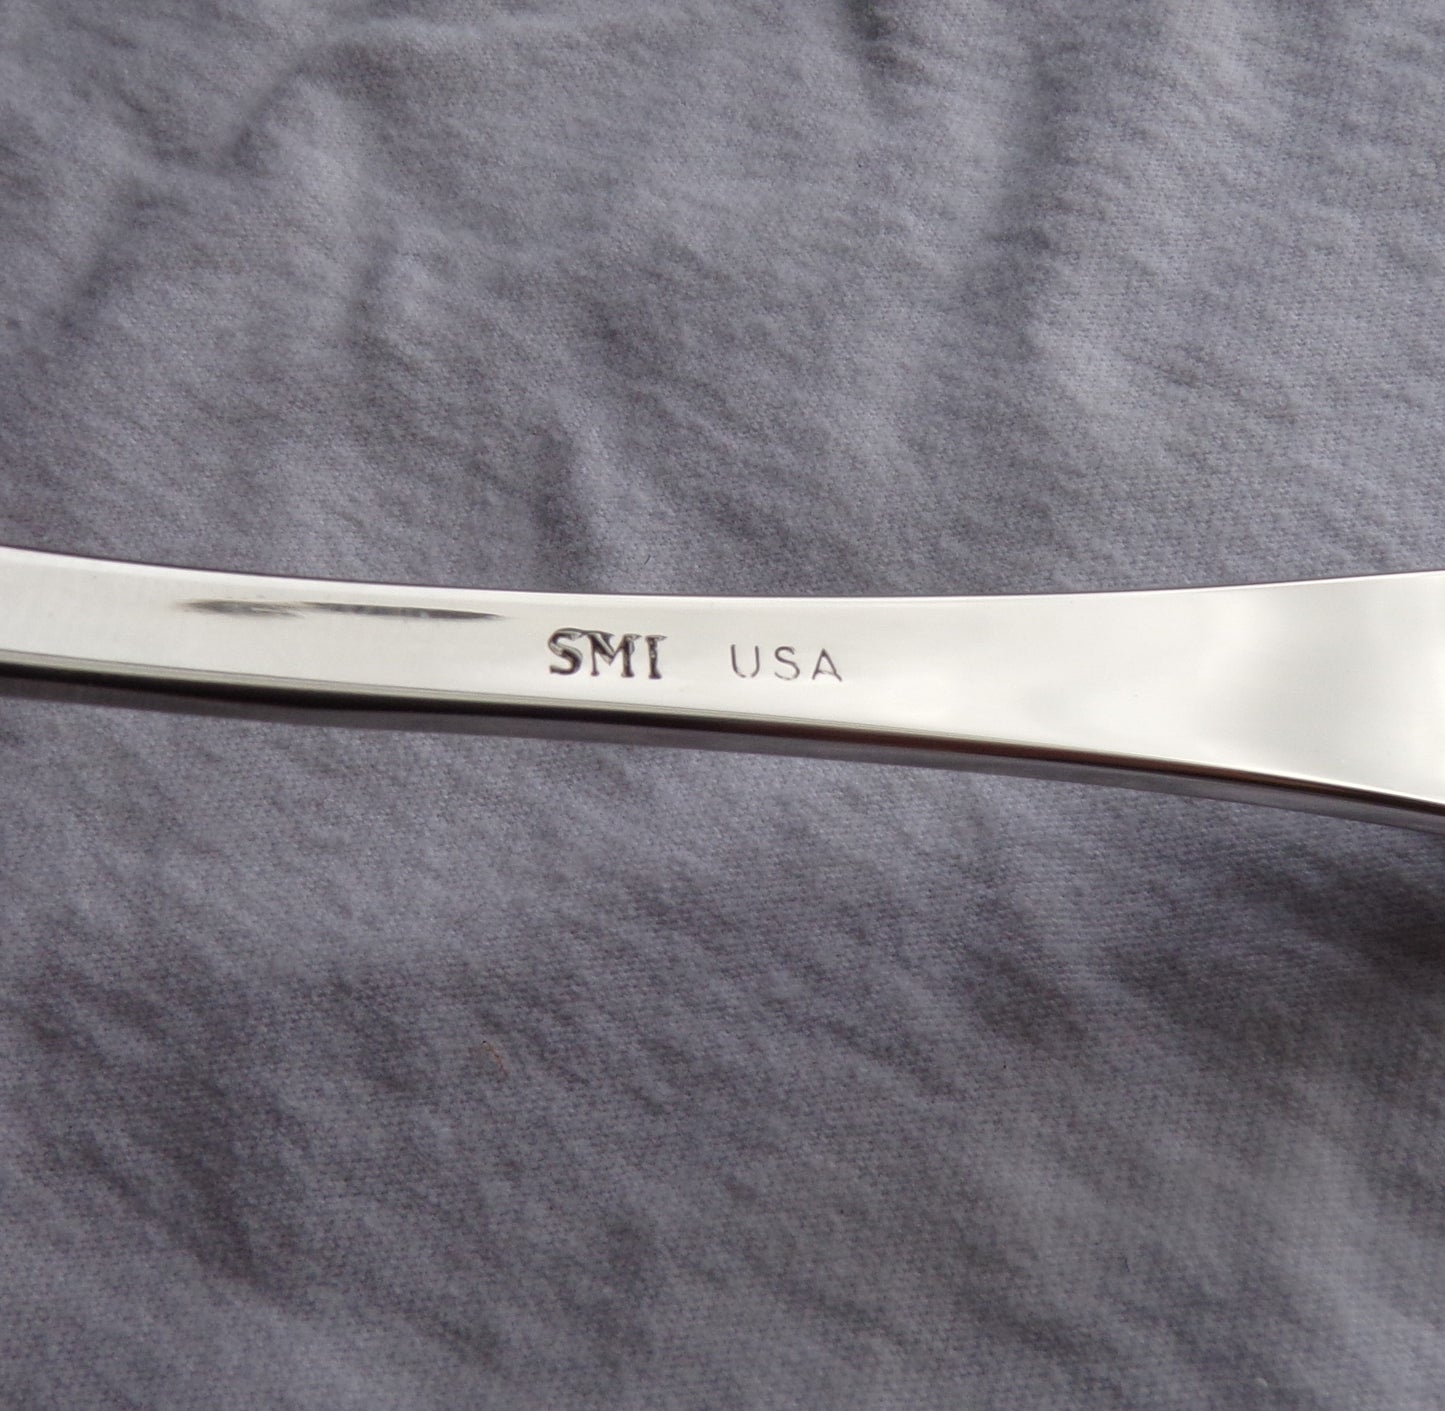 Styx Spoon Engraved Cat/Ouroboros Teaspoon